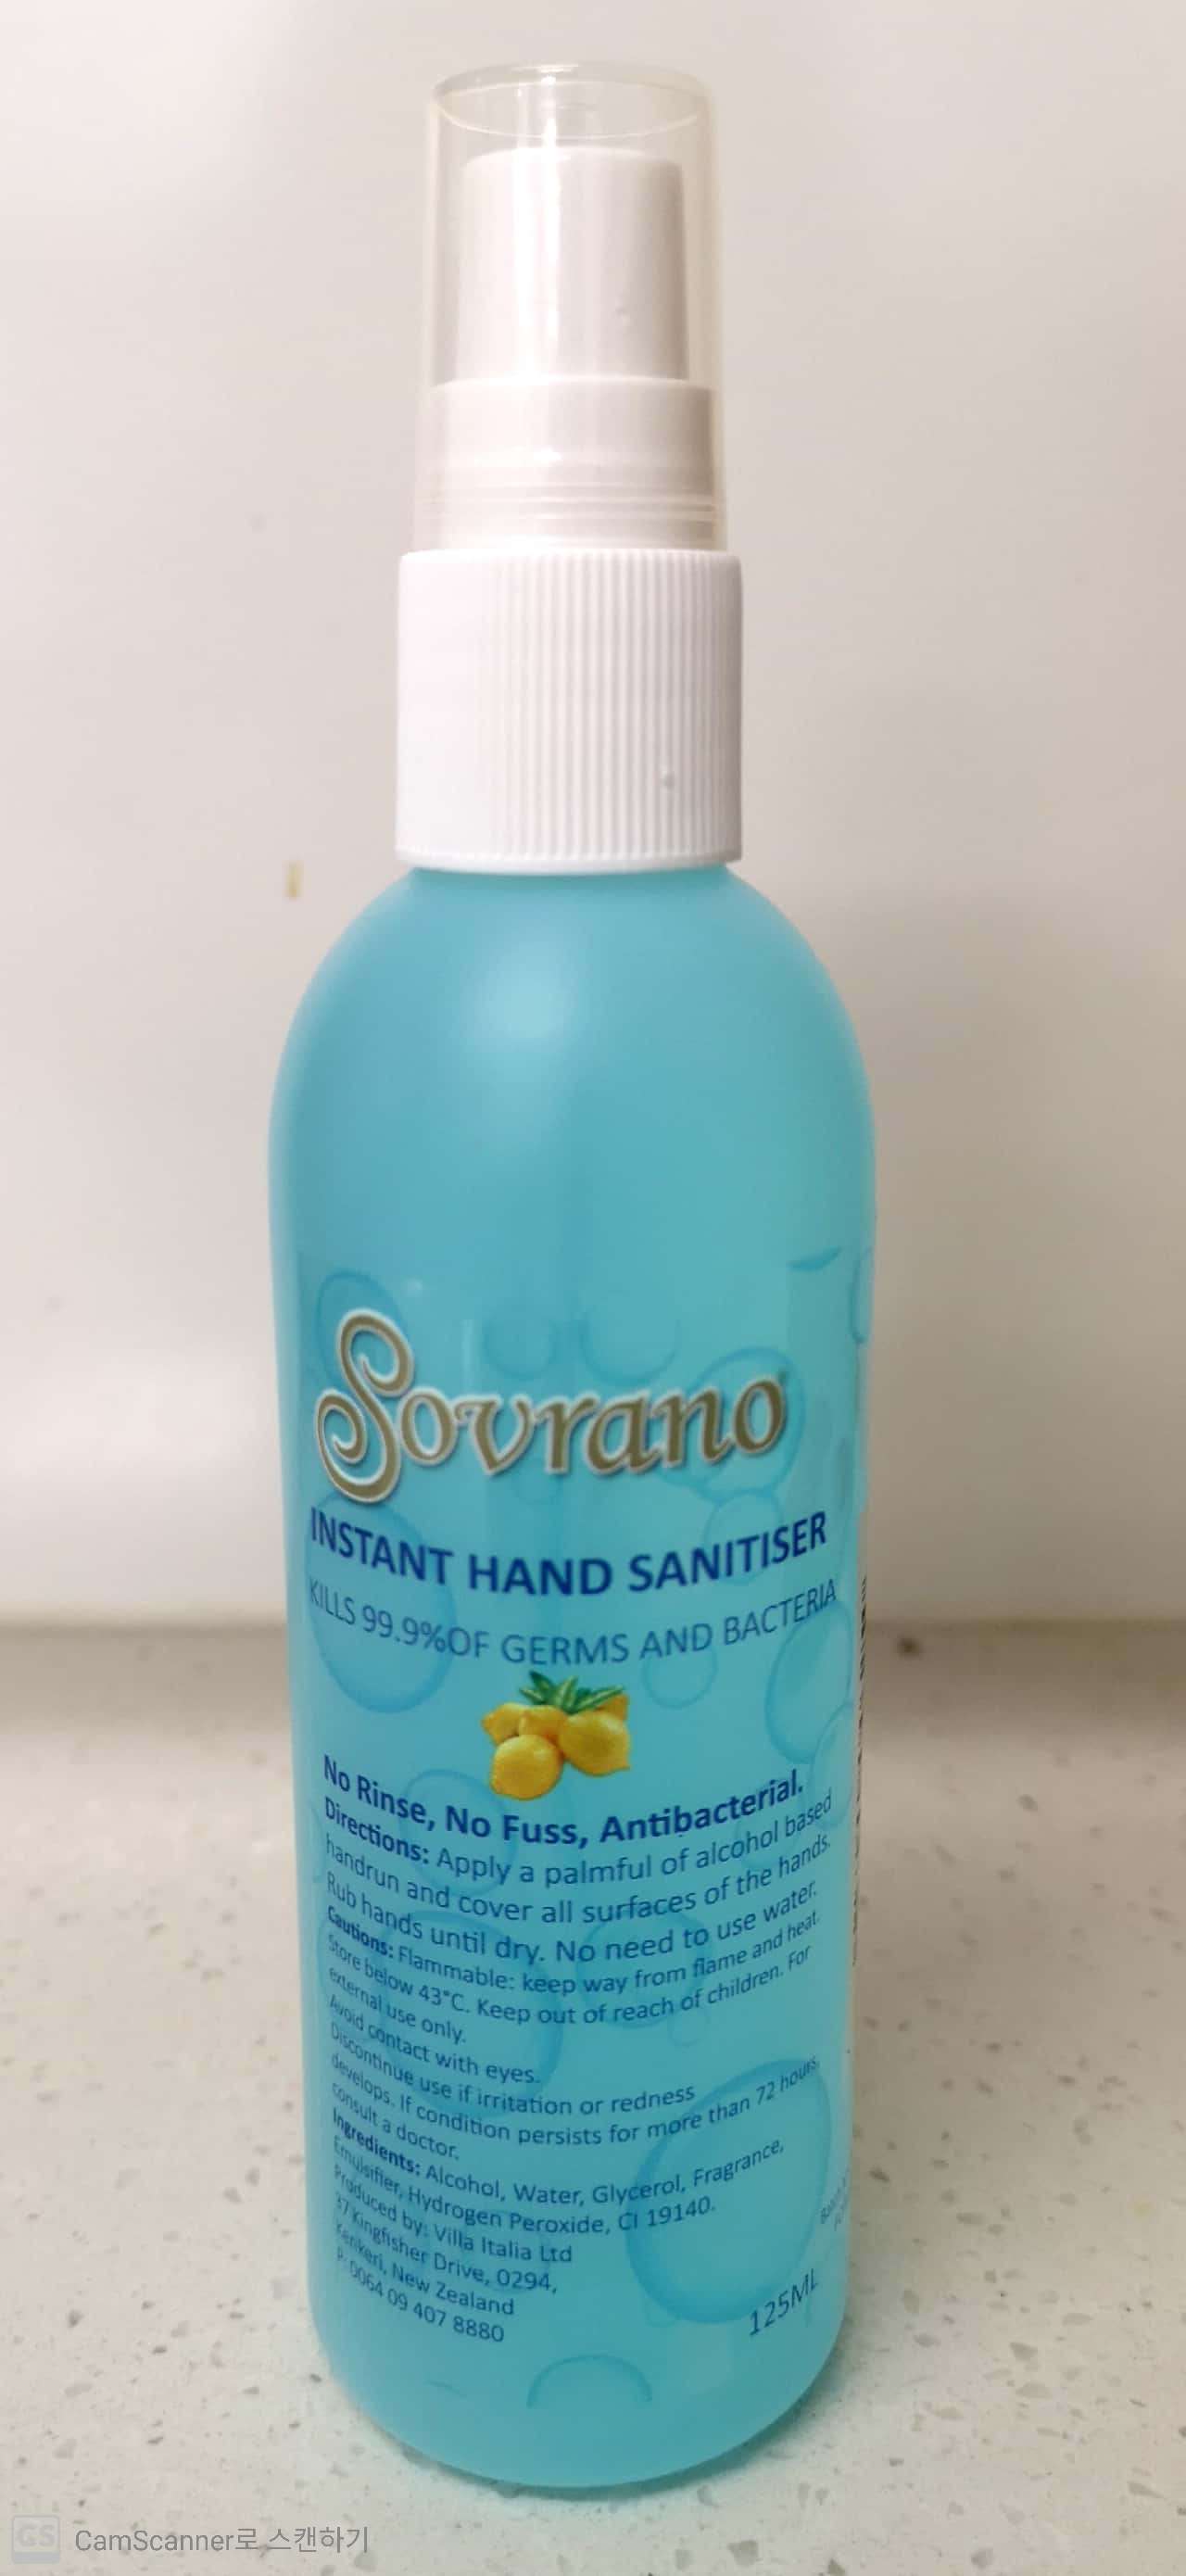 Sovrano Instant Hand Sanitiser 125mL